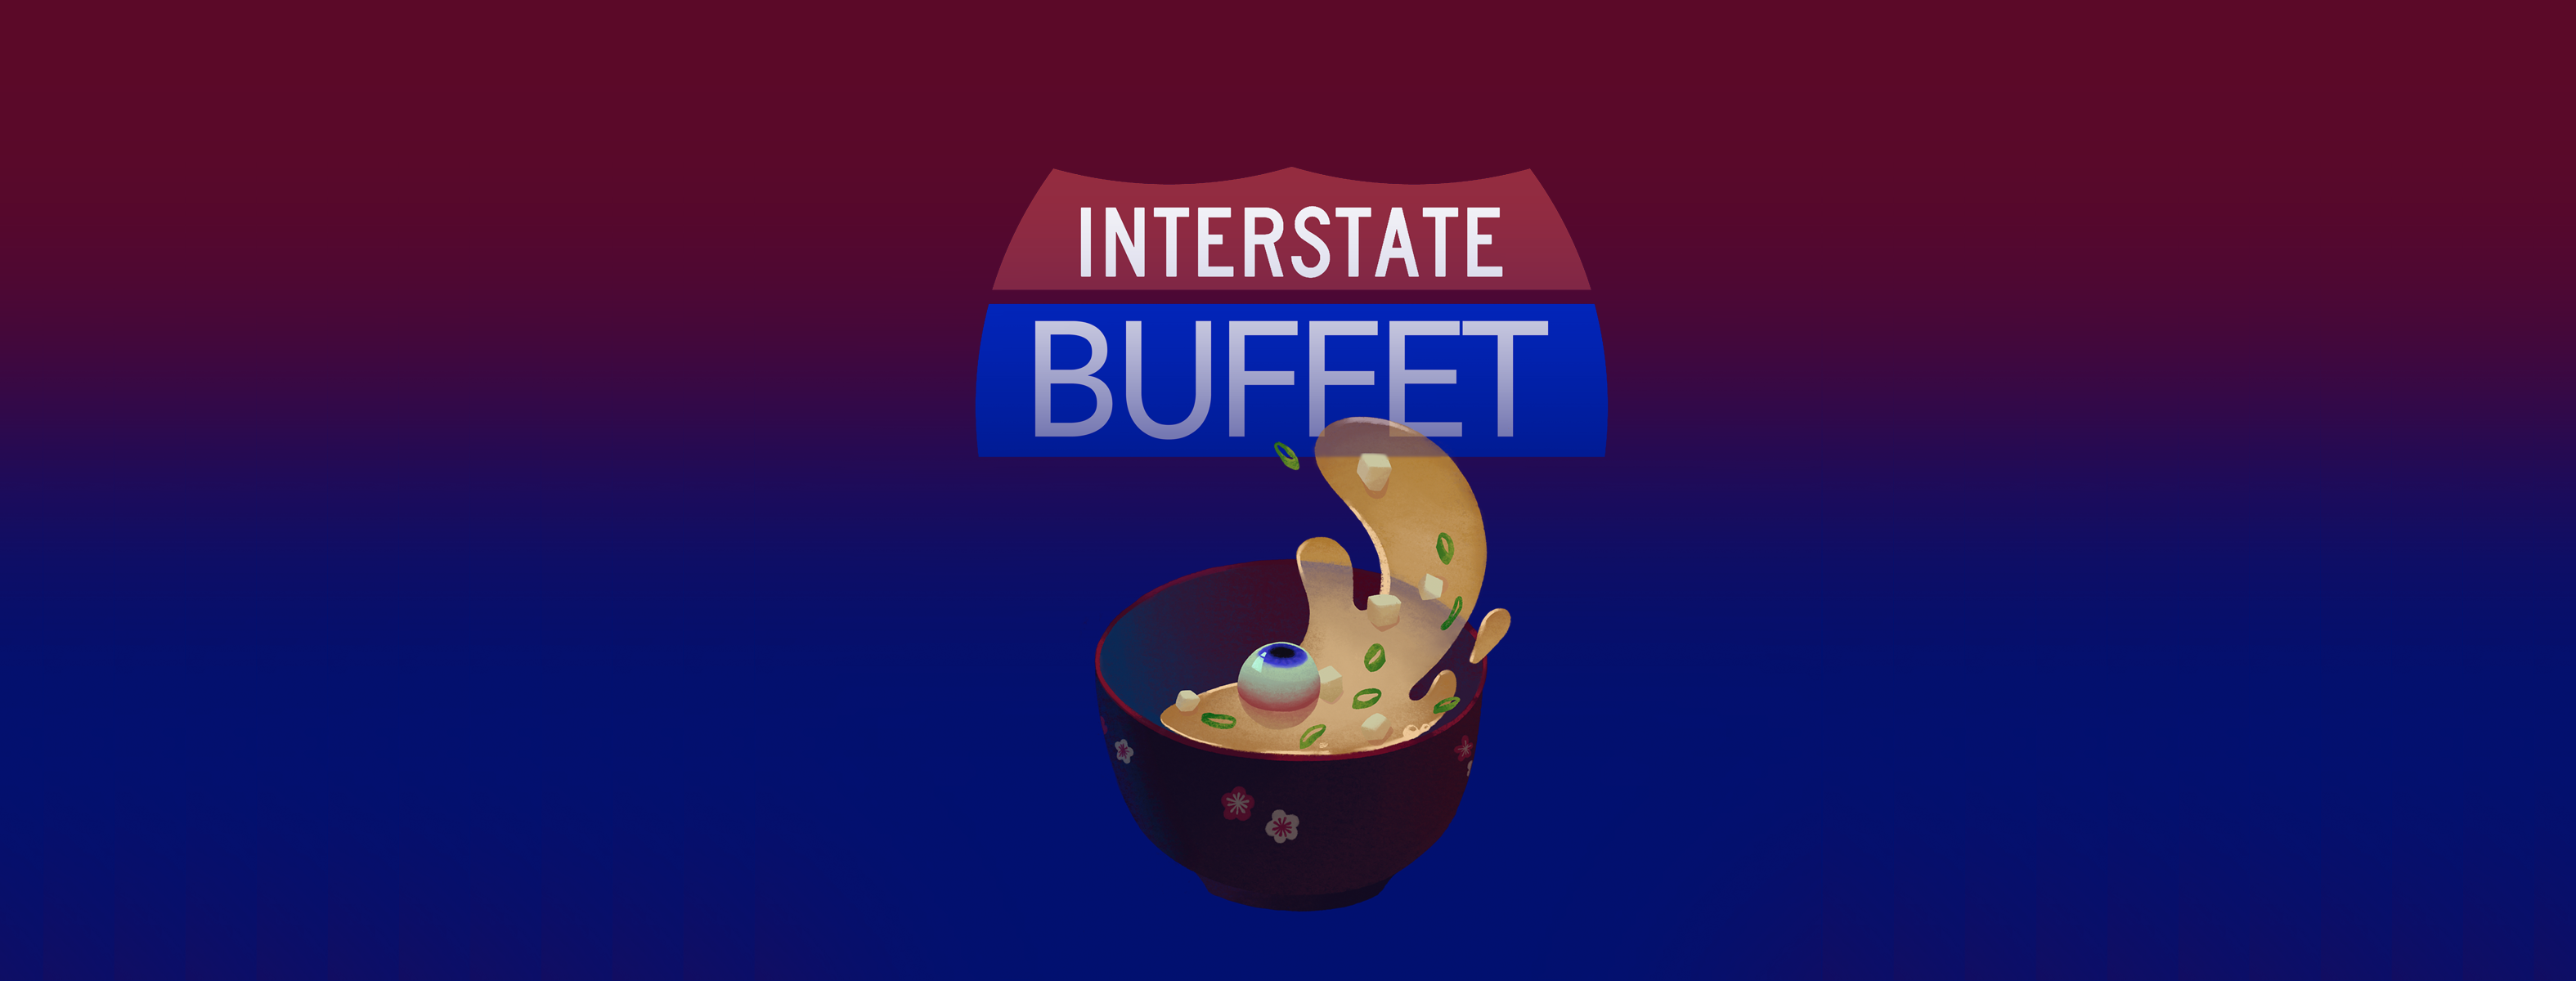 Interstate Buffet